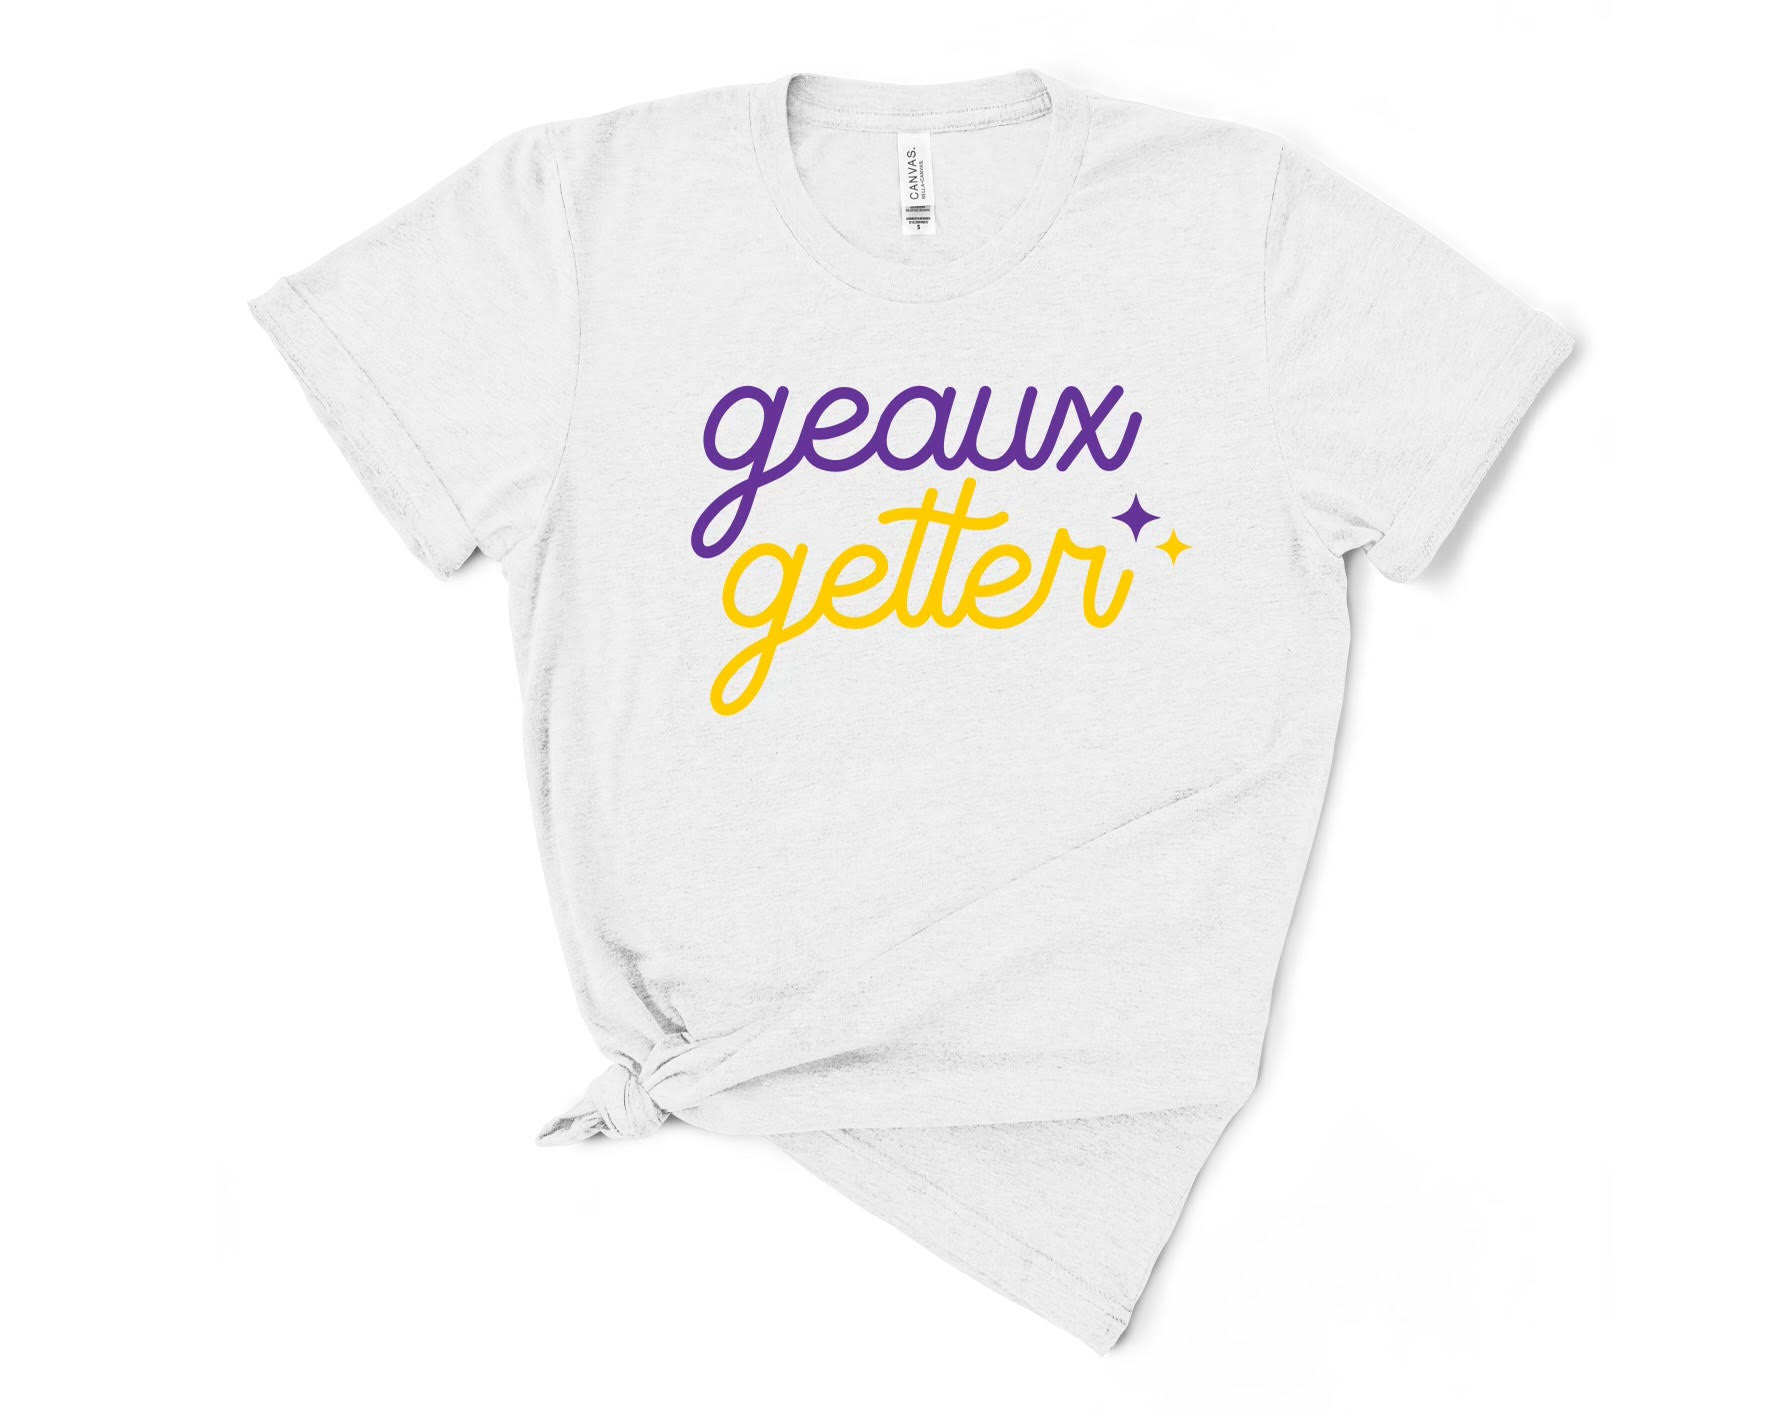 Geaux Shirt